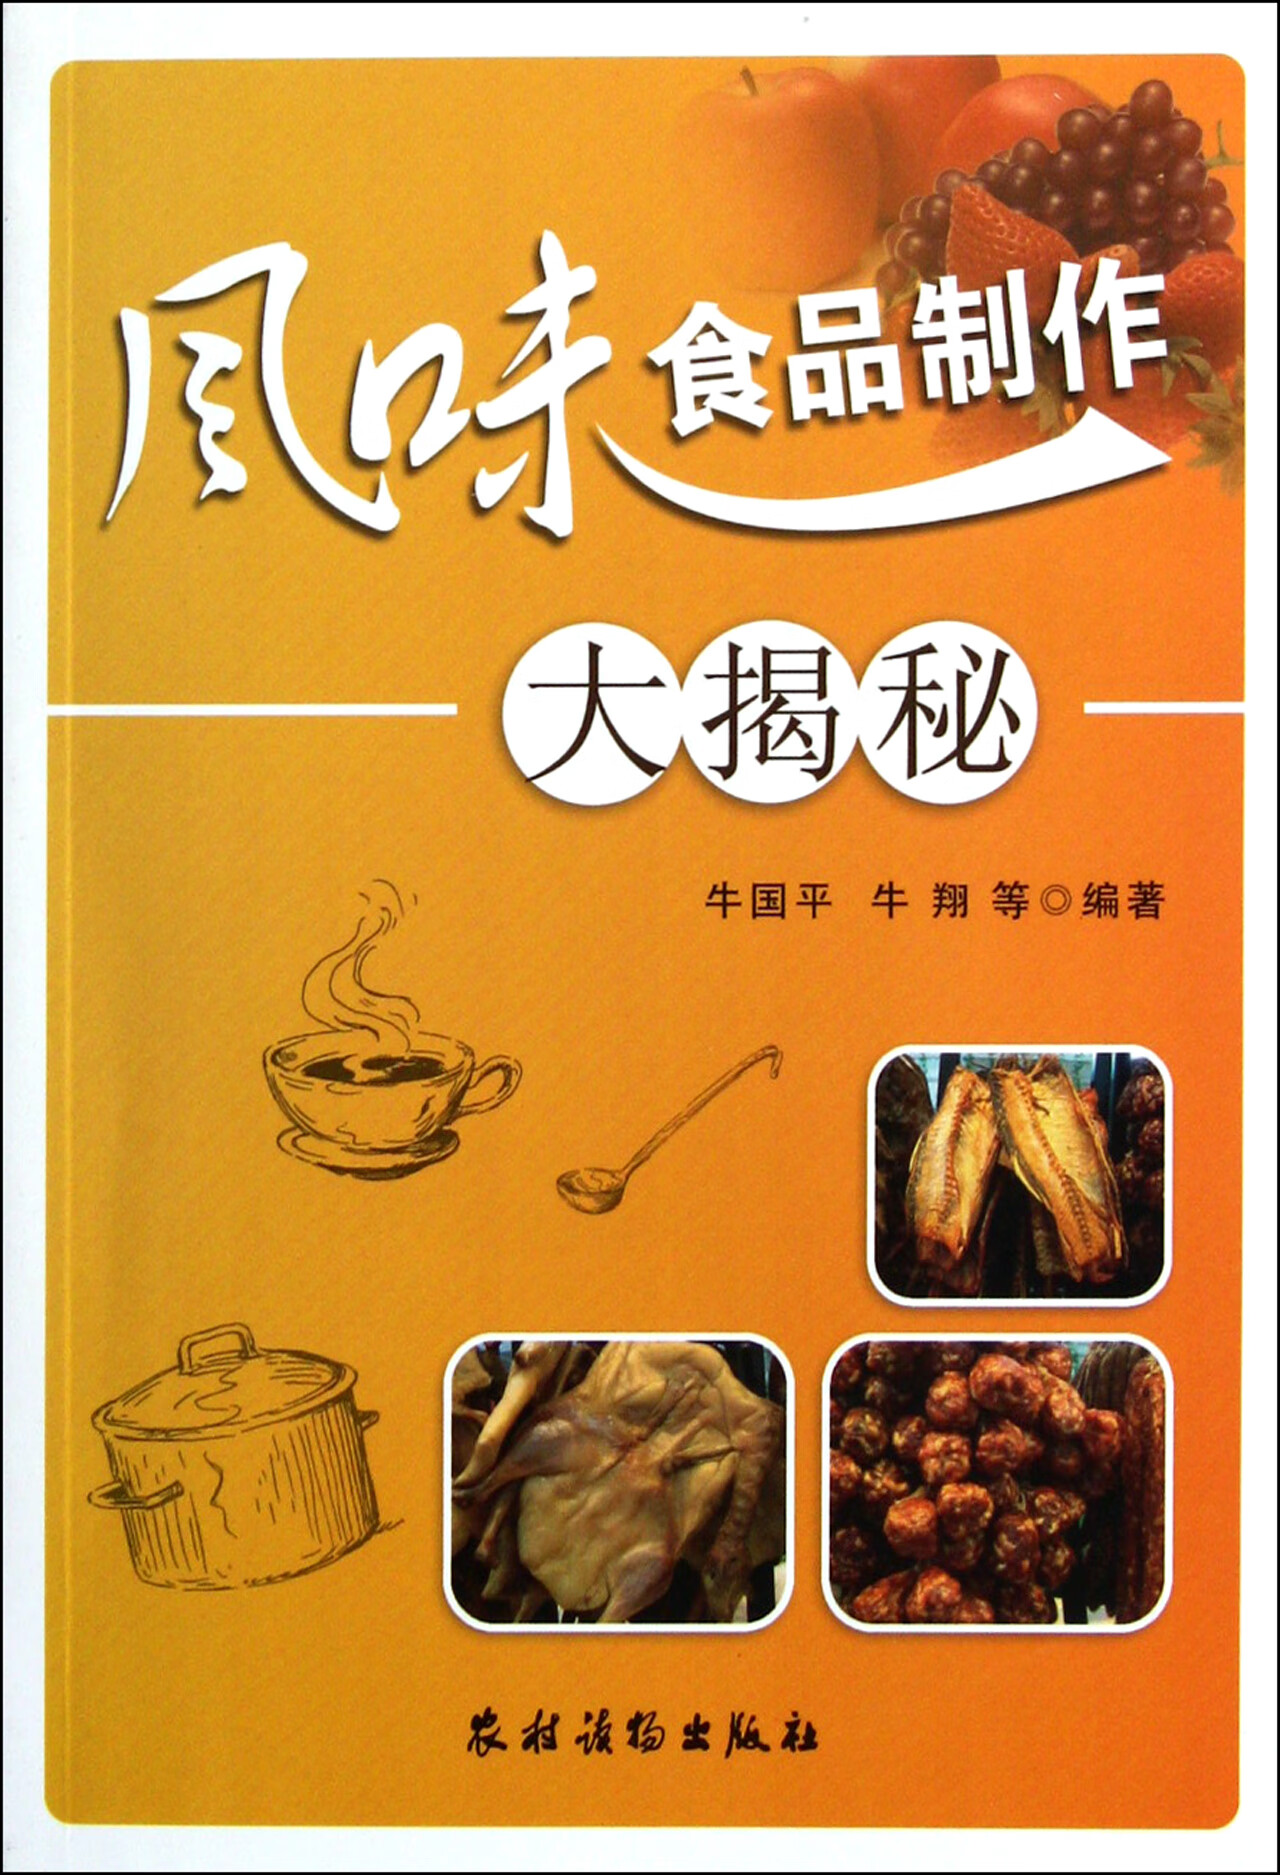 各国的饮食文化是不一样的？中国烹饪文化